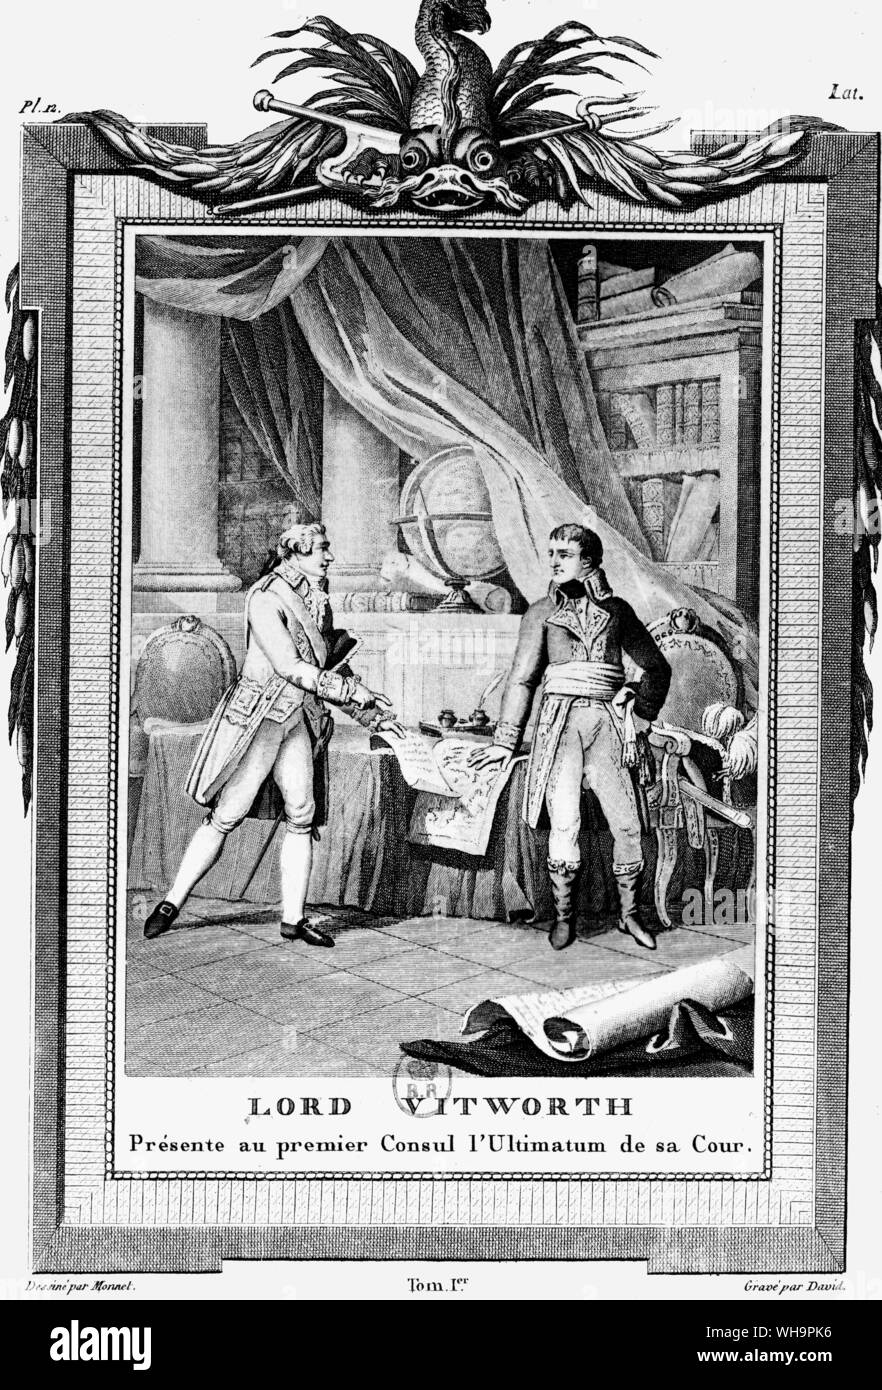 Lord Vitworth presents the Premier of the Consul l'Ultimatum de sa cour. Stock Photo